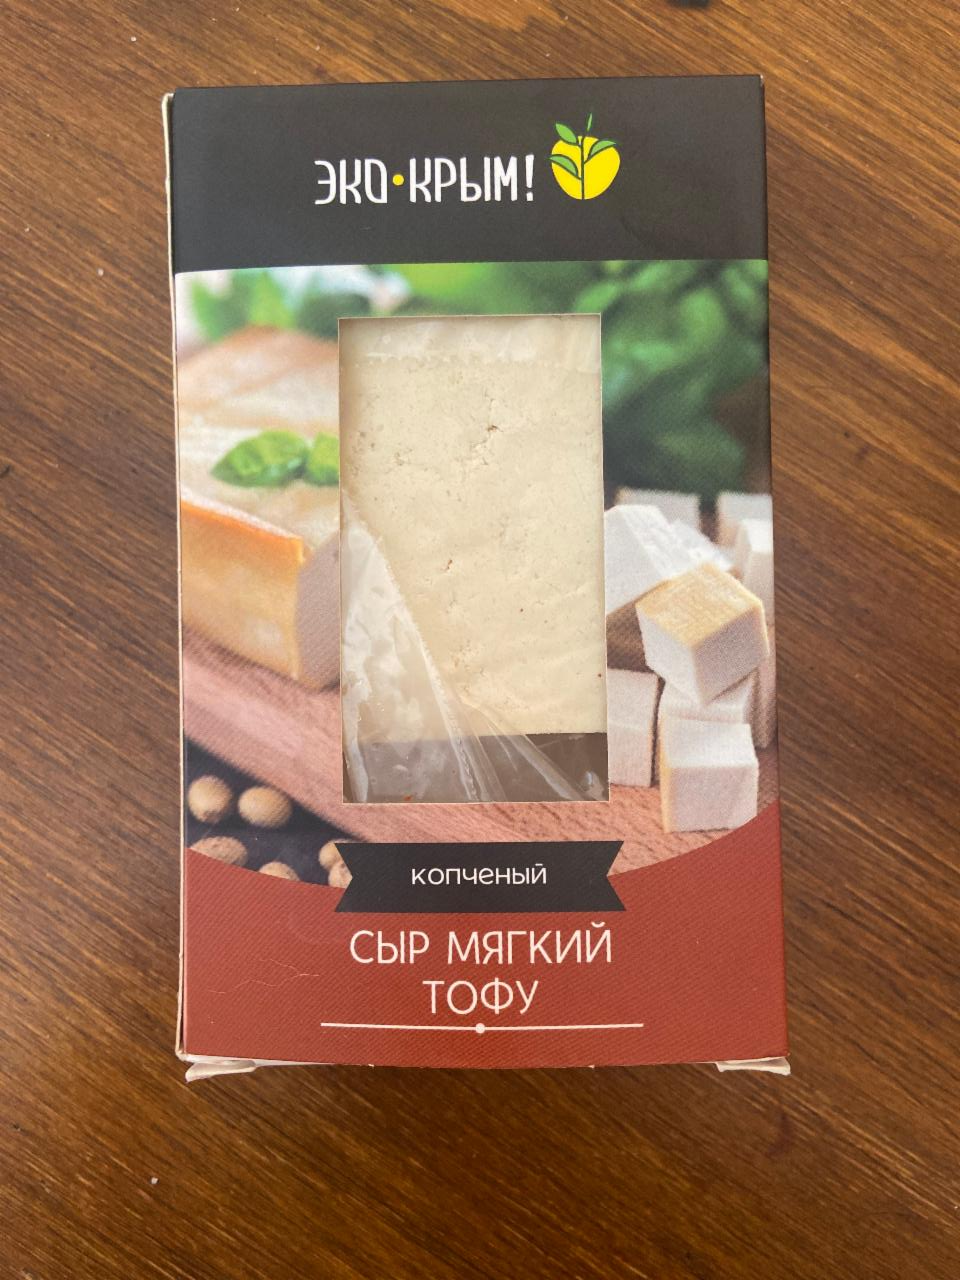 Фото - сыр мягкий тофу копченый Эко-крым!